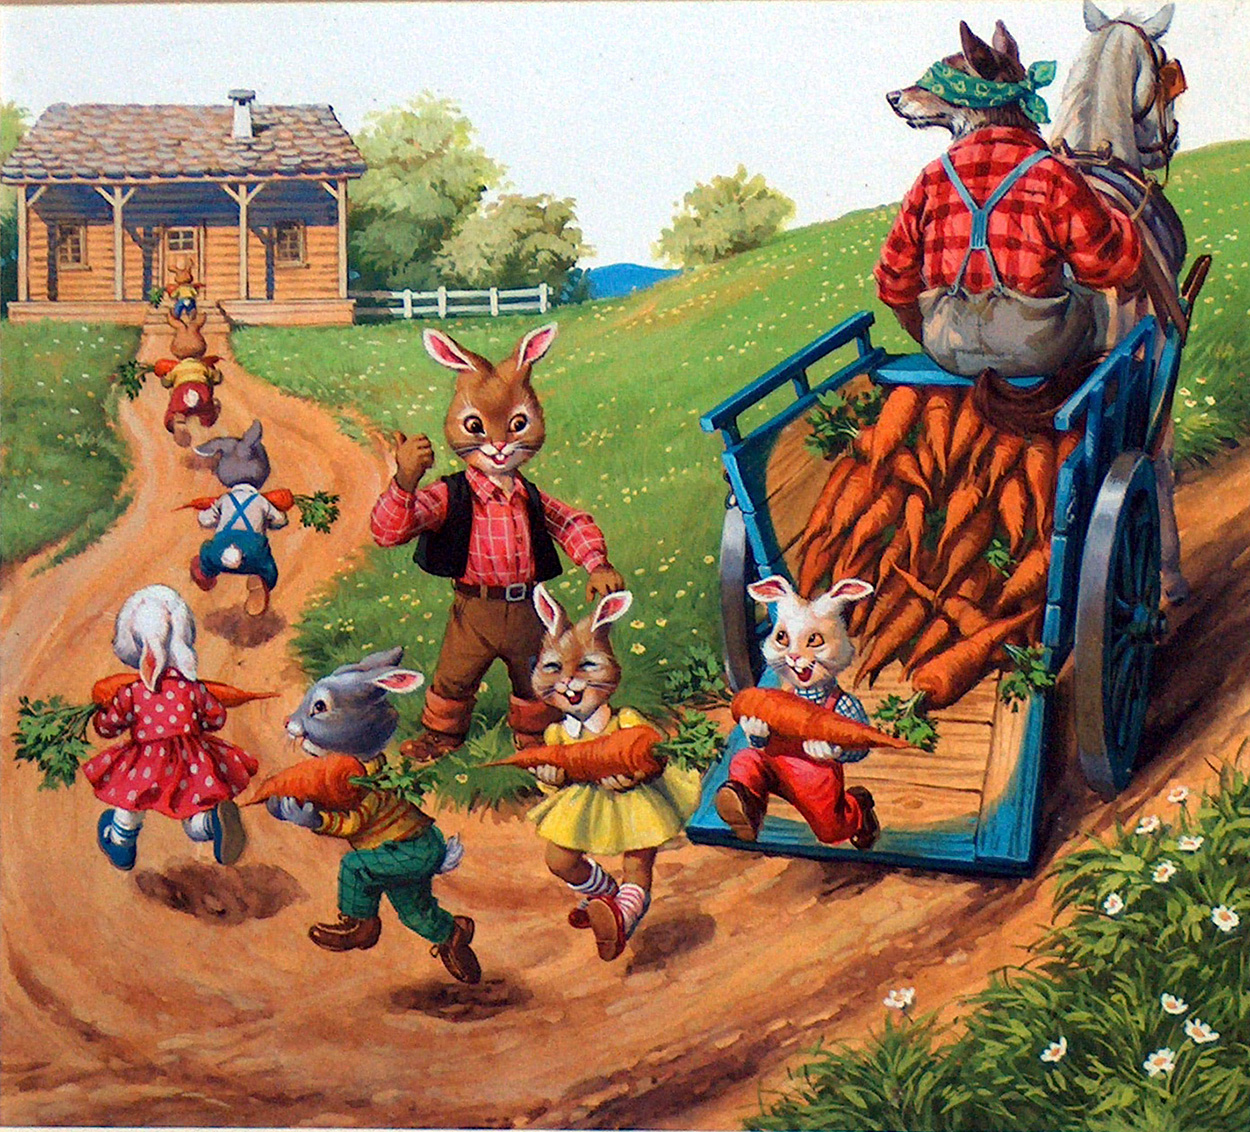 Brer Rabbit 4 (Original) art by Henry Fox at The Illustration Art Gallery